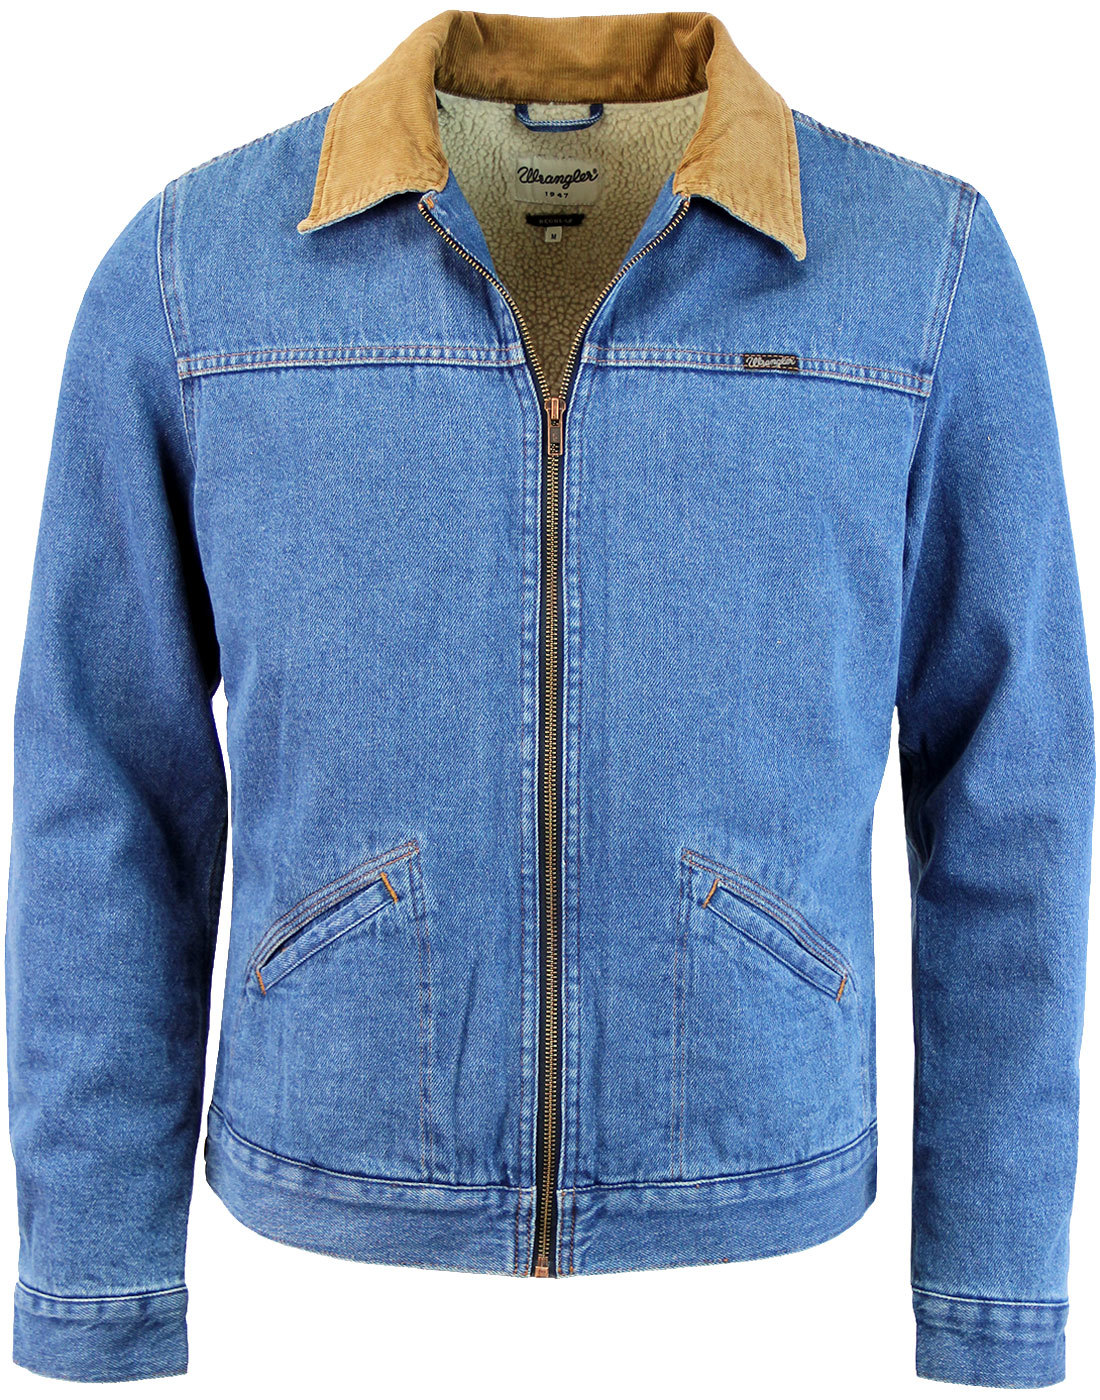 vintage wrangler sherpa lined denim jacket